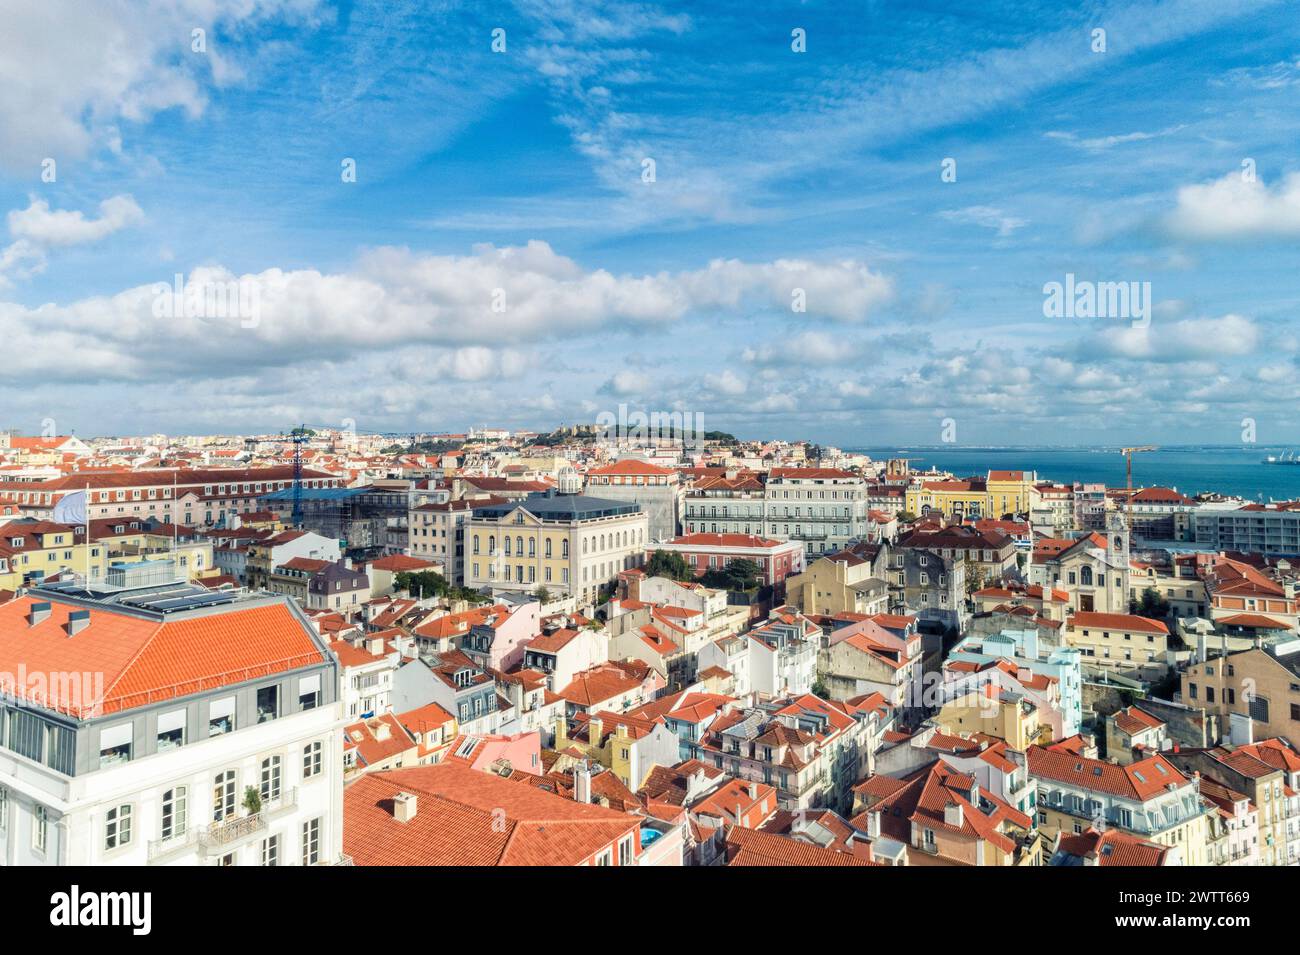 Vista aerea dello skyline e del paesaggio urbano della città vecchia di Lisbona in Portogallo Foto Stock